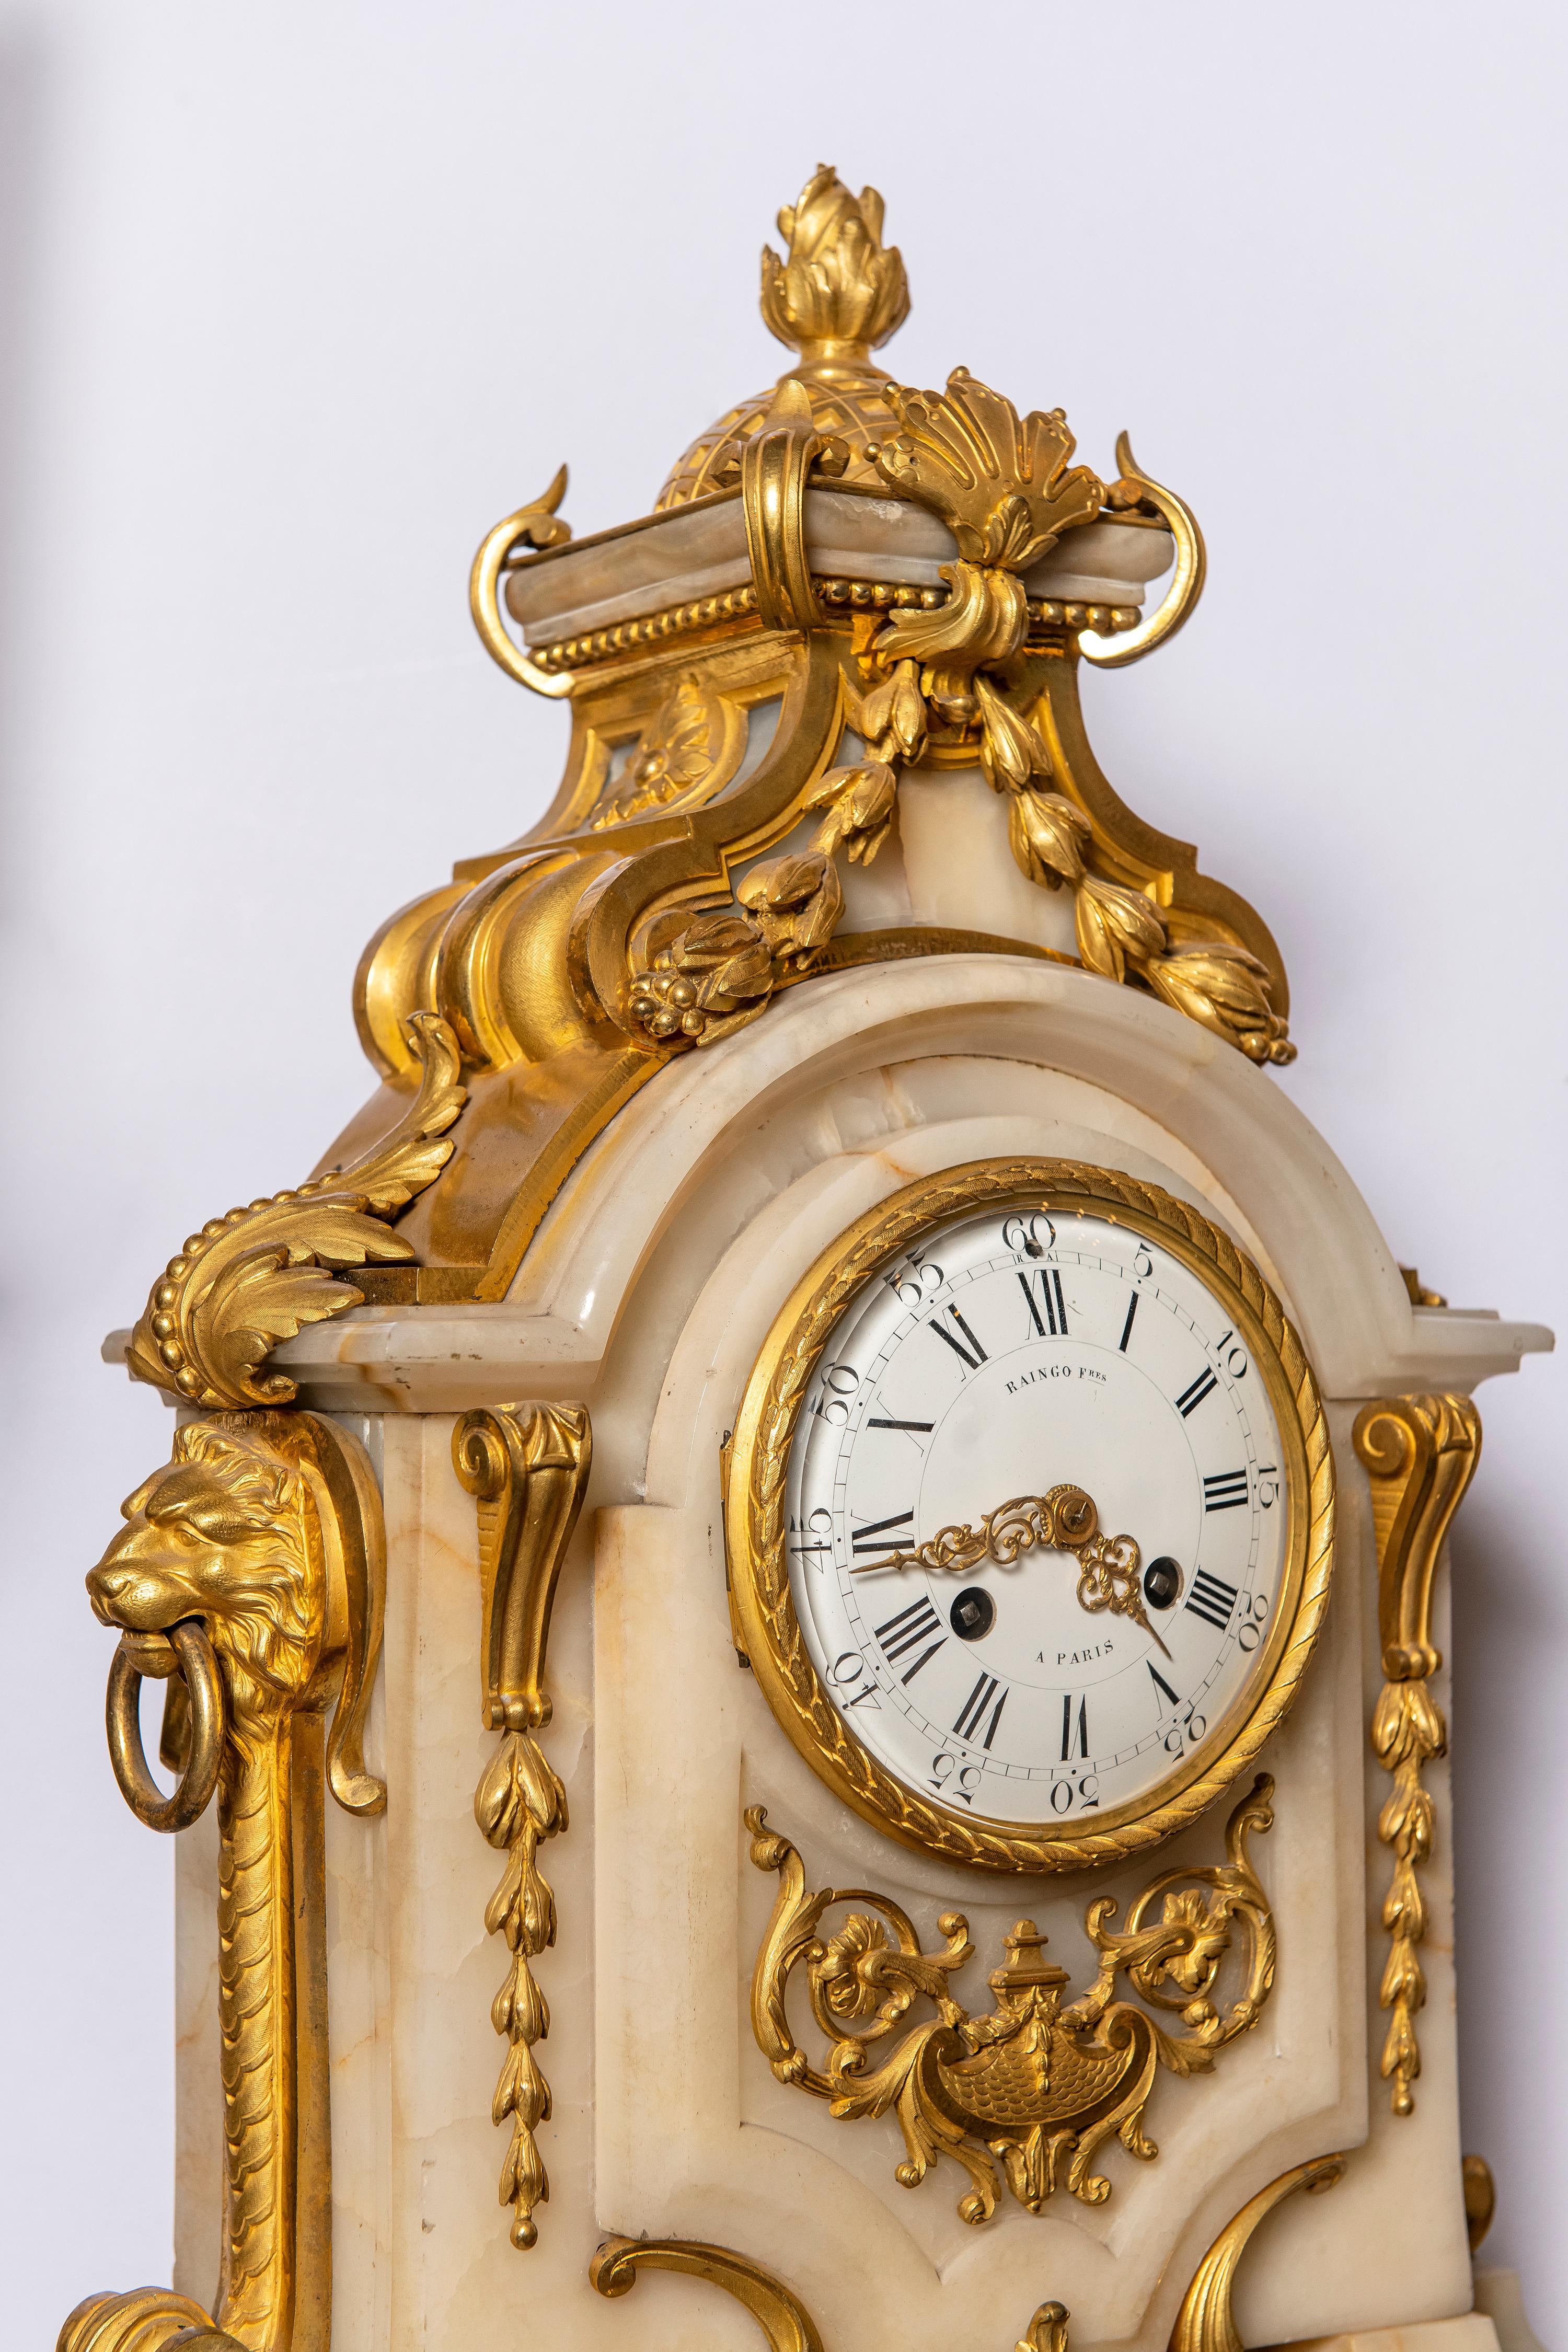 Garniture d'horloge à trois pièces en bronze doré et marbre. Horloge signée Raingo Fres. France, 19ème siècle.
L'horloge fonctionne.

Dimensions de l'horloge : 71 cm de hauteur, 46 cm de largeur, 22 cm de profondeur.
Dimensions des candélabres :